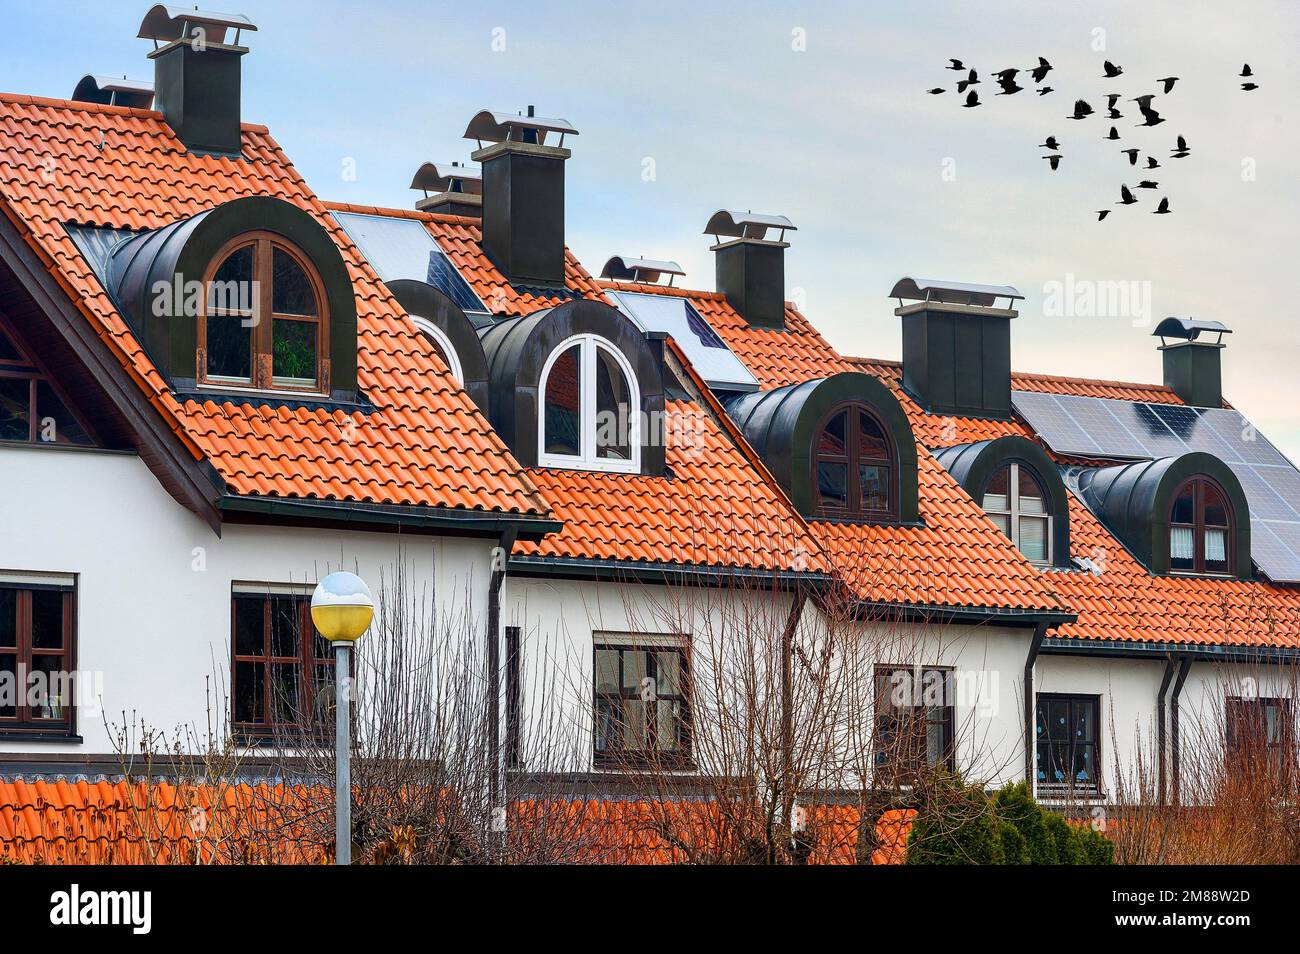 Toits de maisons en terrasse modernes, toits carrelés avec dormeurs et panneaux solaires, Kempten, Allgaeu, Bavière, Allemagne Banque D'Images